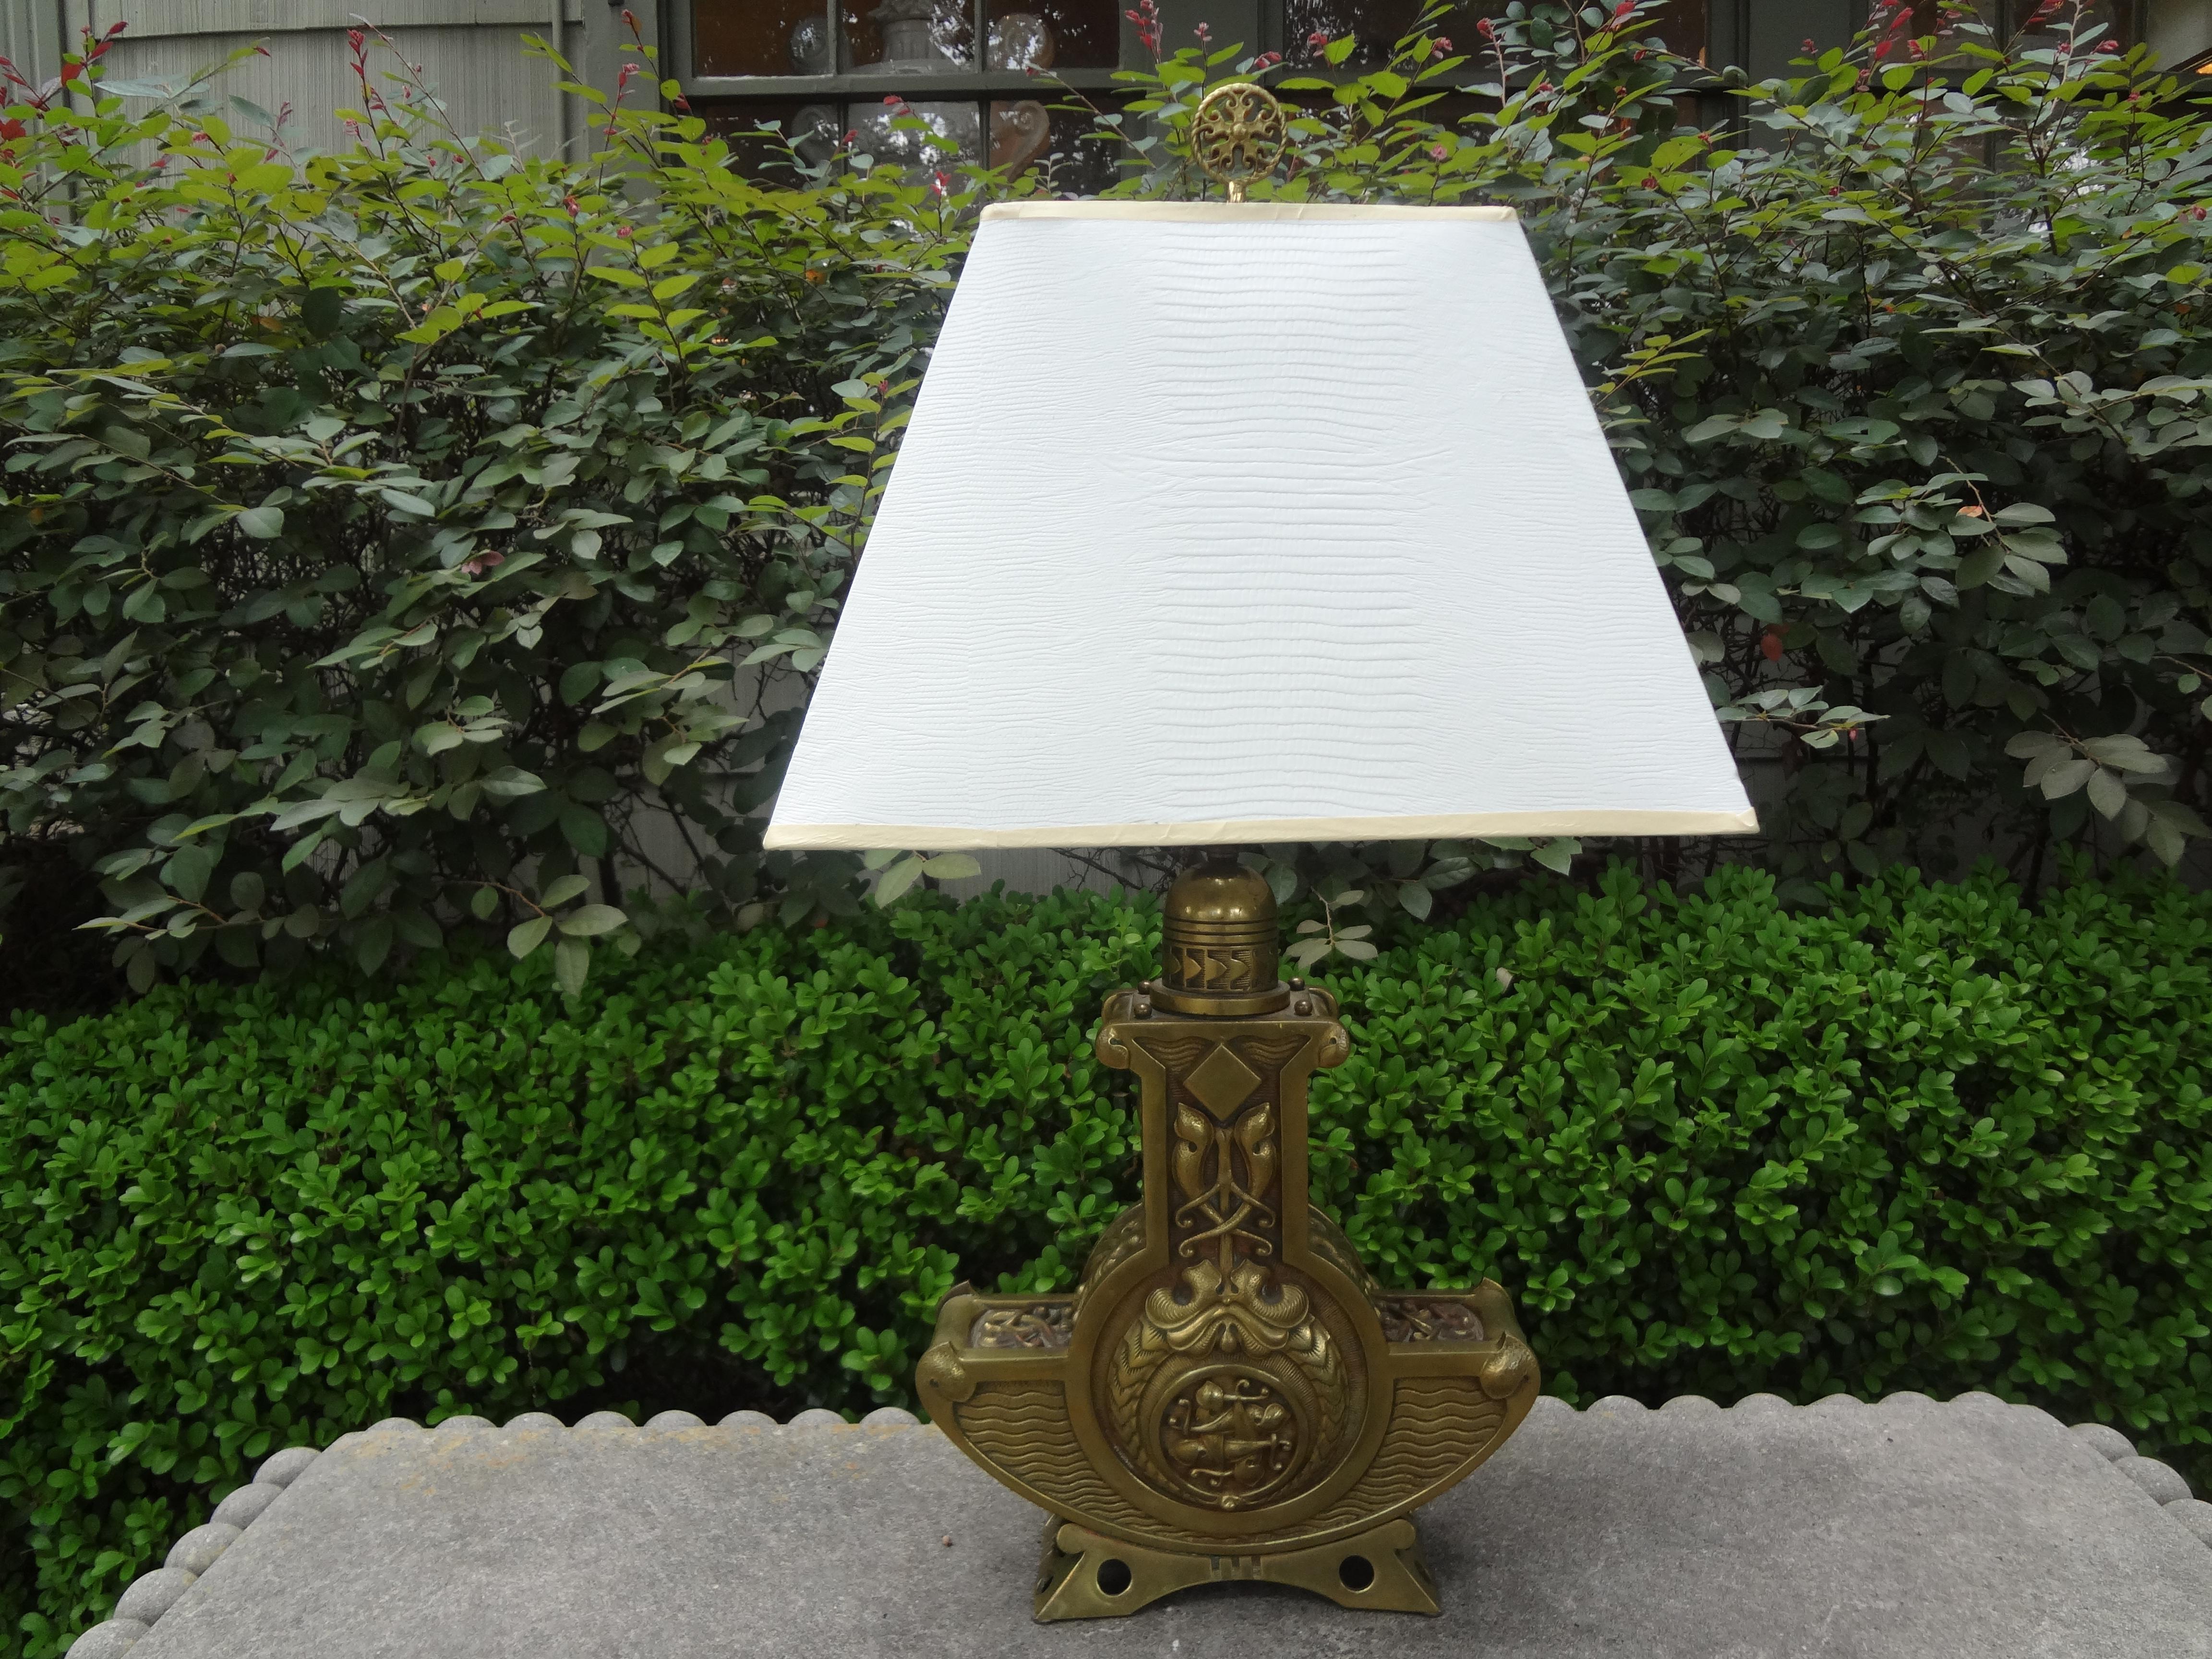 Belle lampe de table d'époque Art Nouveau autrichienne en bronze. Cette lampe en bronze autrichien de haute qualité et magnifiquement détaillée a été nouvellement câblée et s'adapterait bien à une variété d'intérieurs.
Dimensions de la lampe